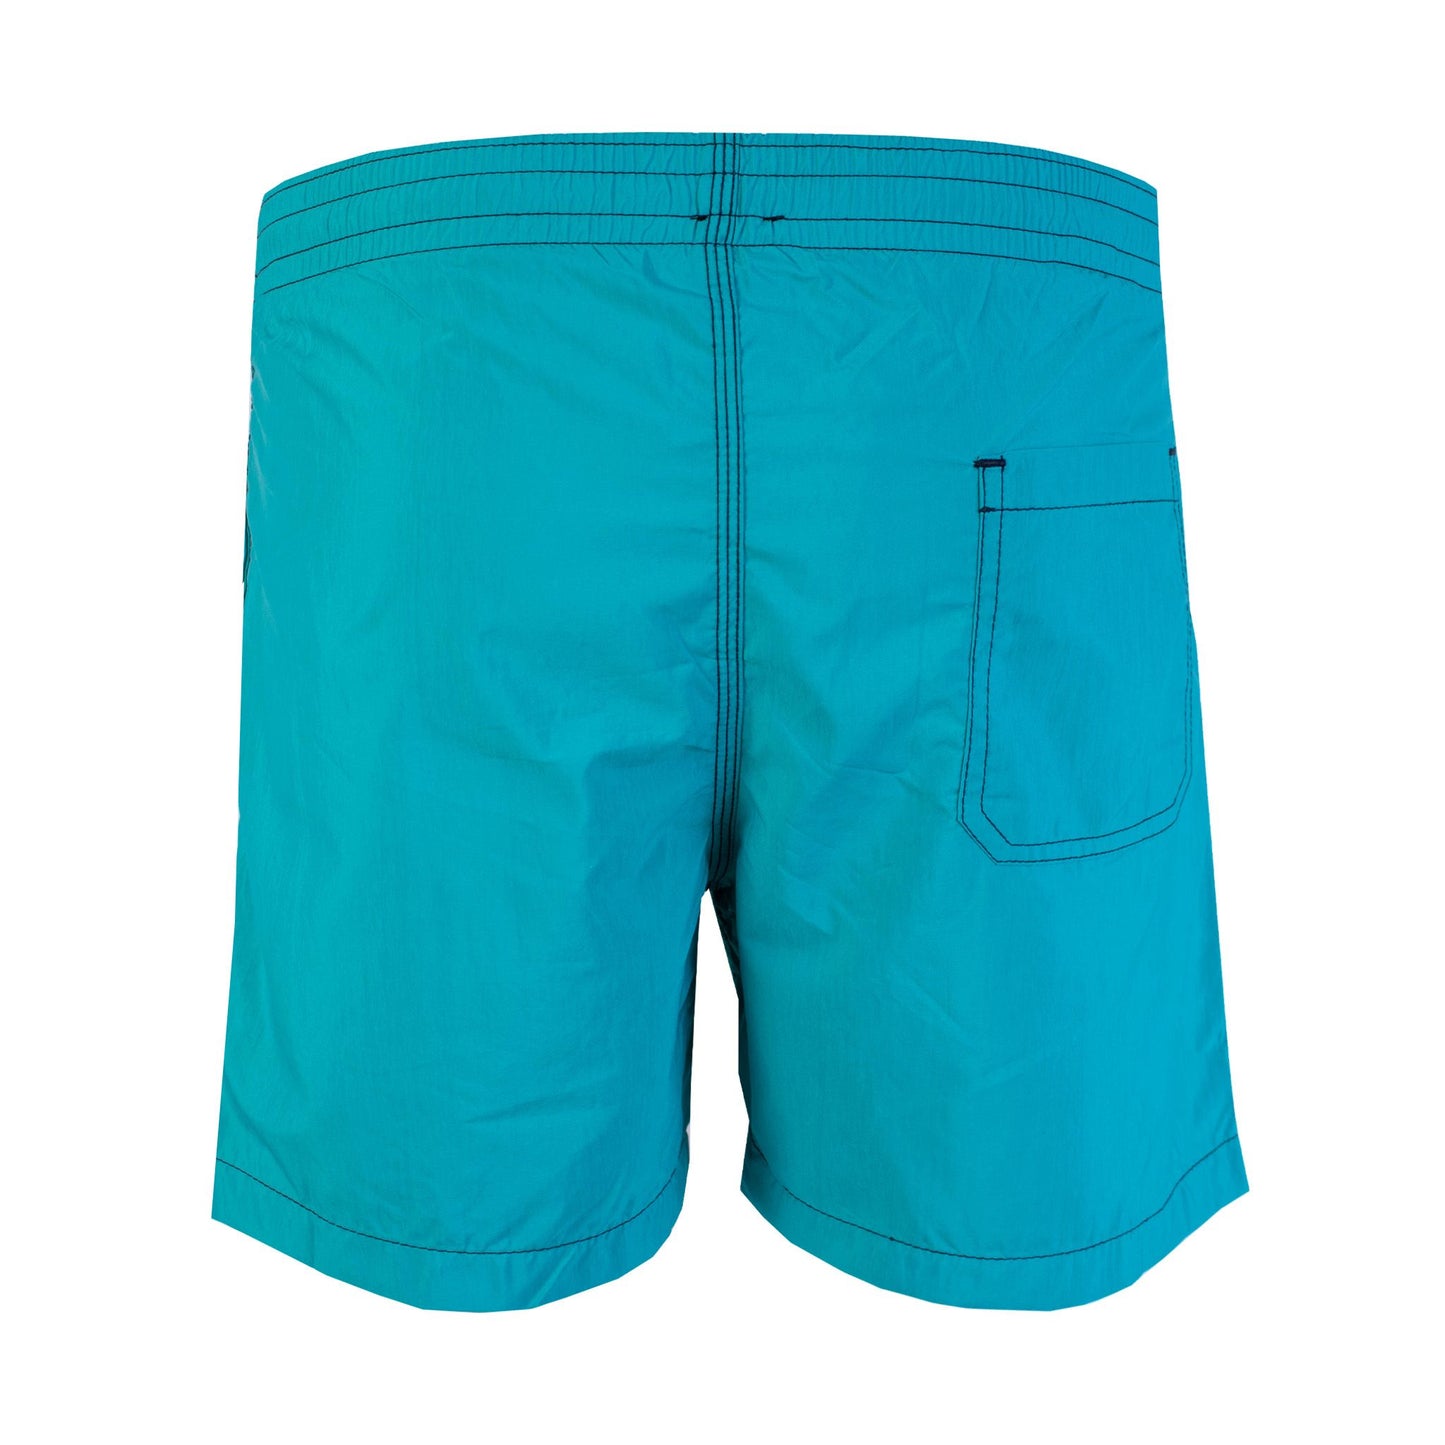 Malo Chic Turquoise Swim Shorts